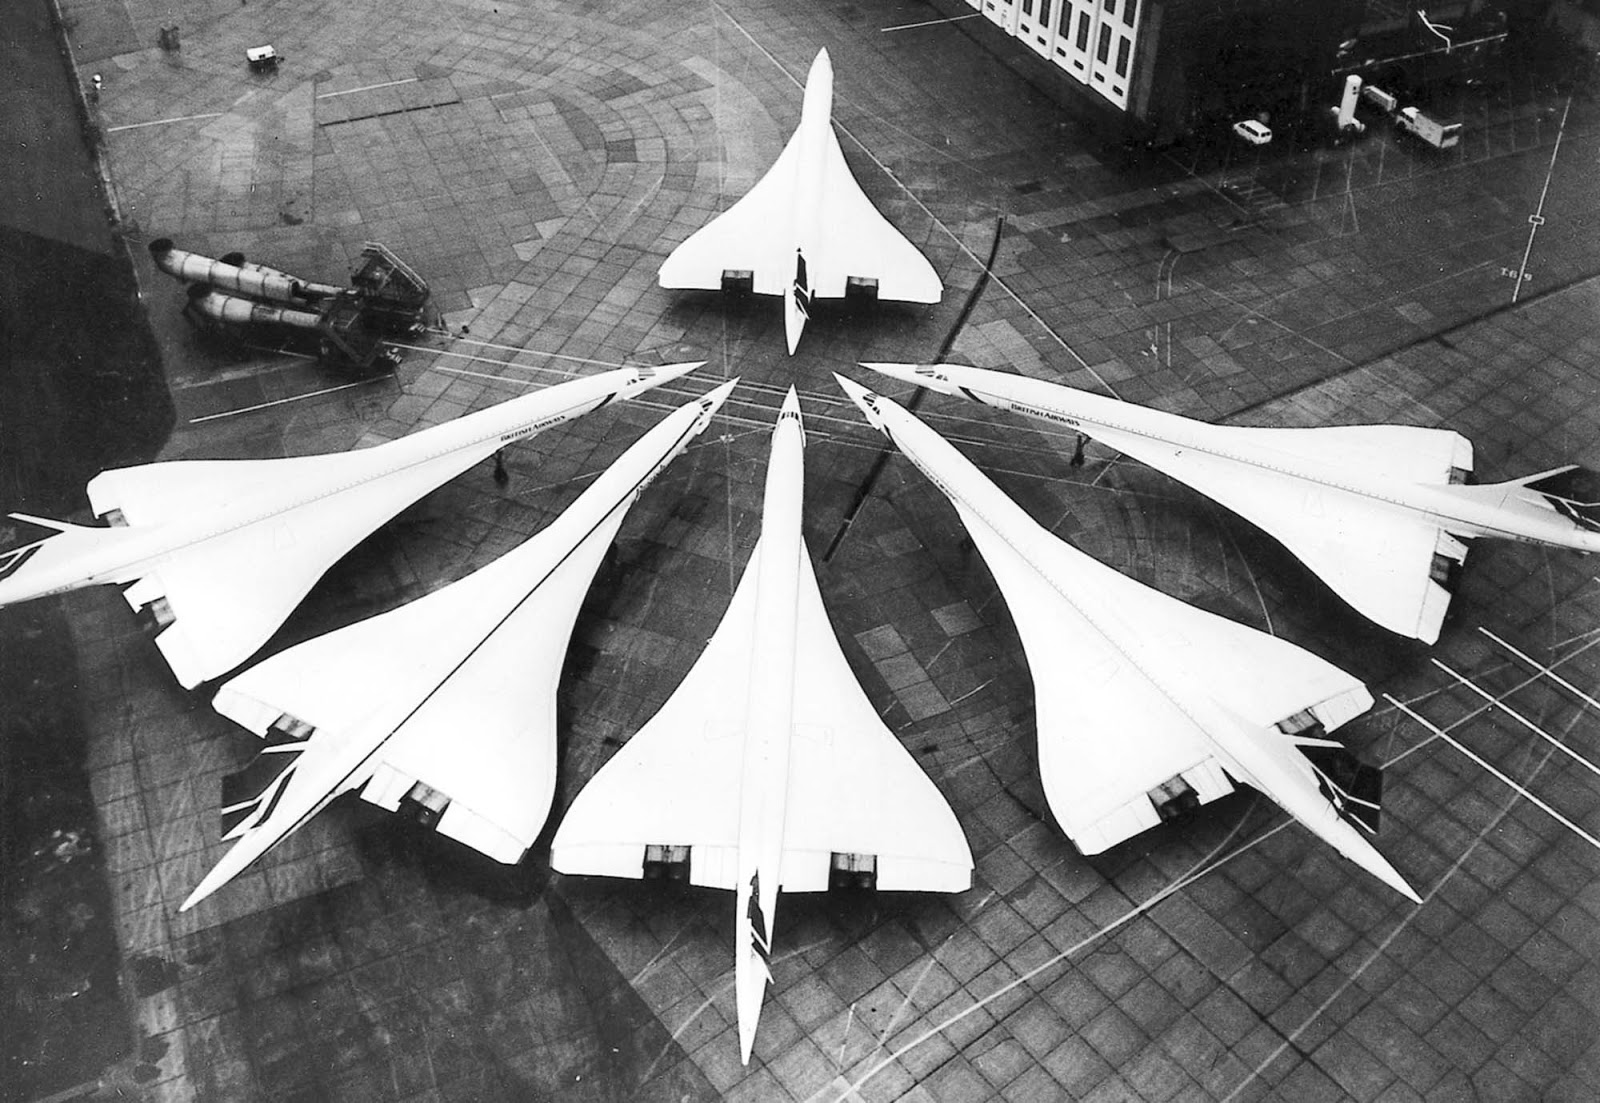 Concorde Fleet.jpg